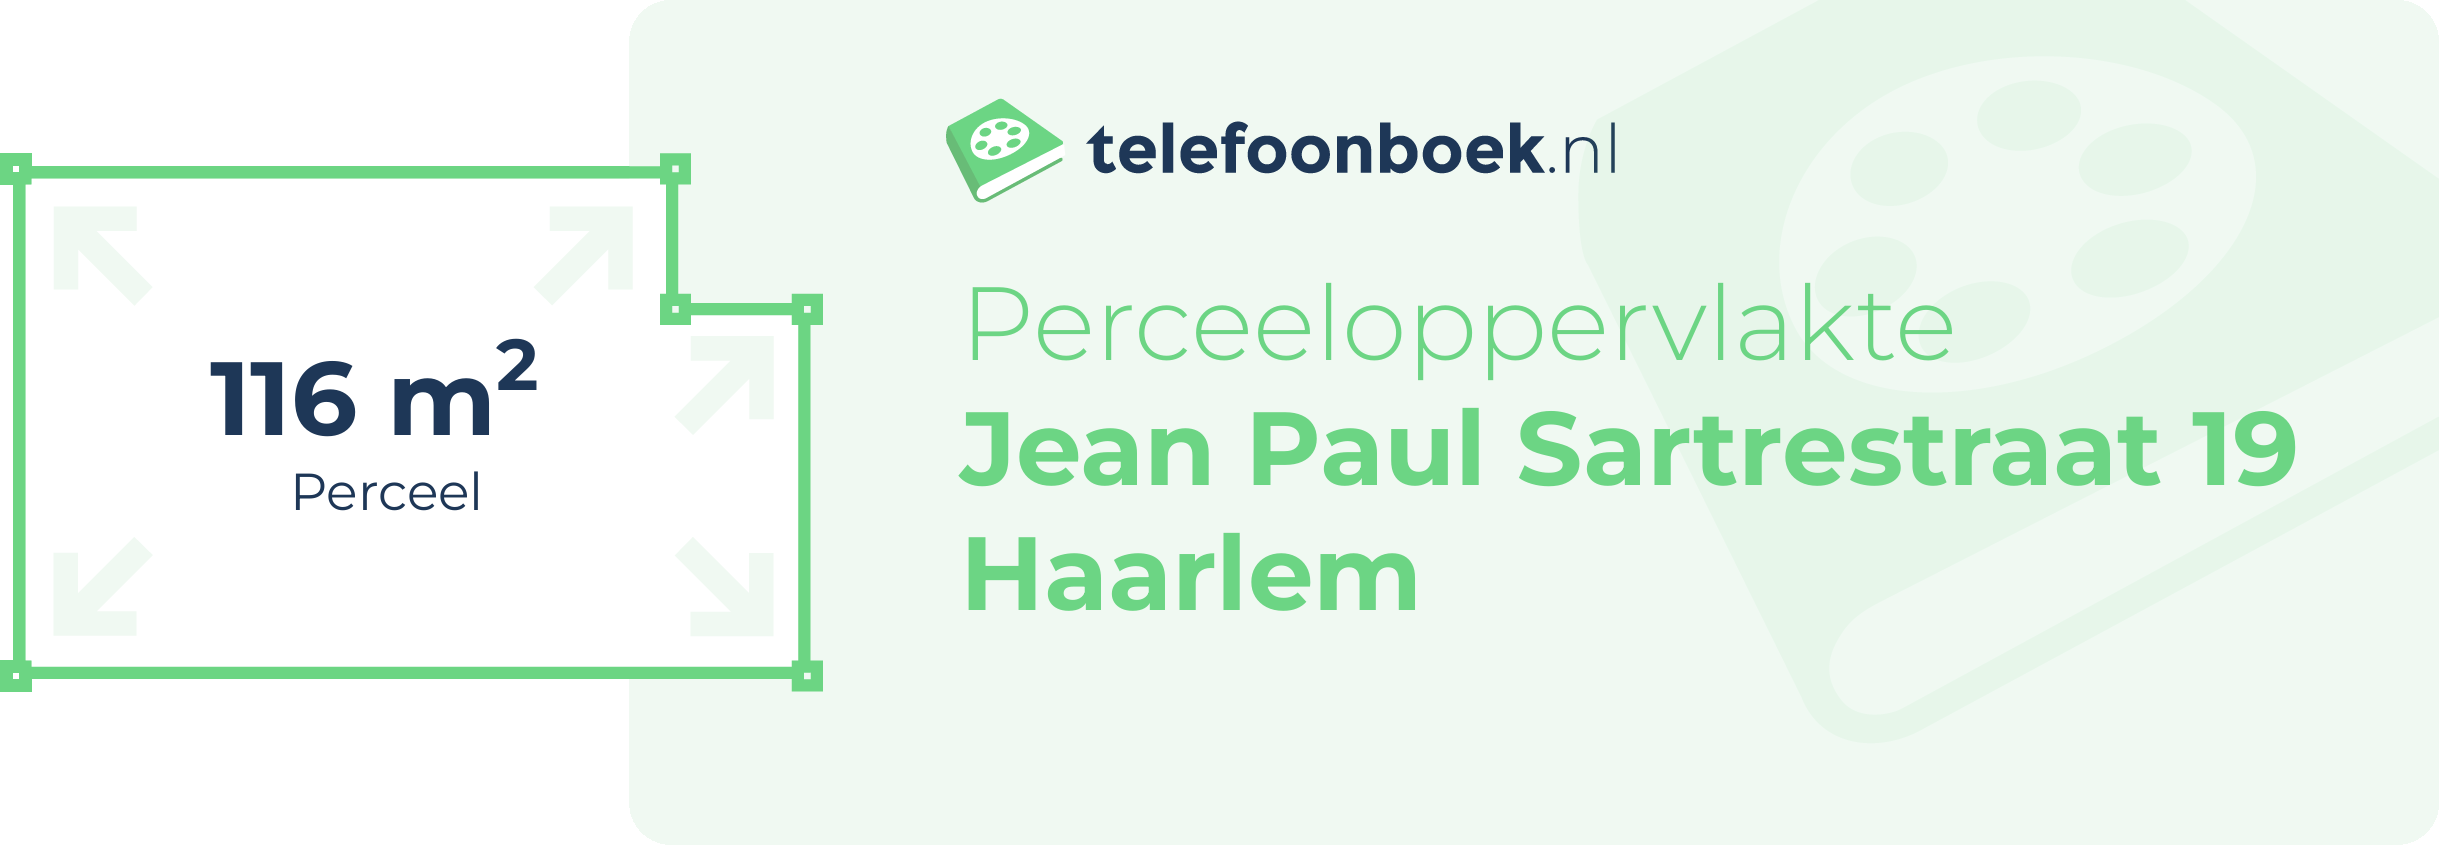 Perceeloppervlakte Jean Paul Sartrestraat 19 Haarlem